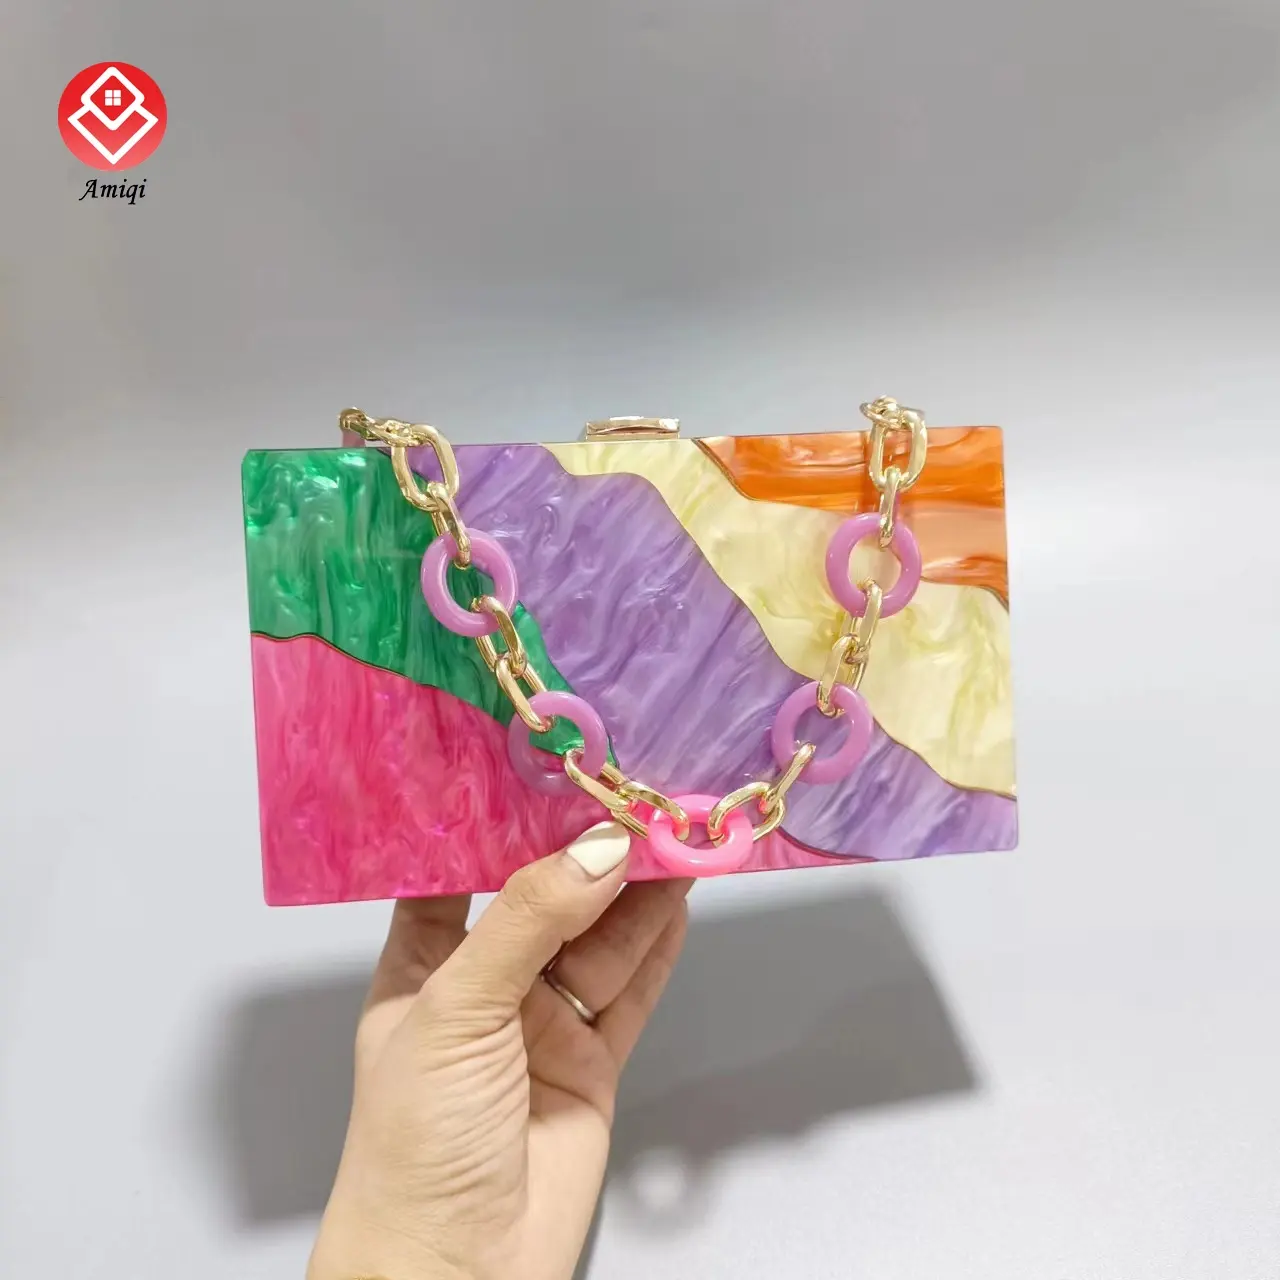 Amiqi YM38-38 Wedding Evening Clutch Women Clutch Bag Acrylic Popular Multicolor Party Light Handbag Handmade Fashionable Style